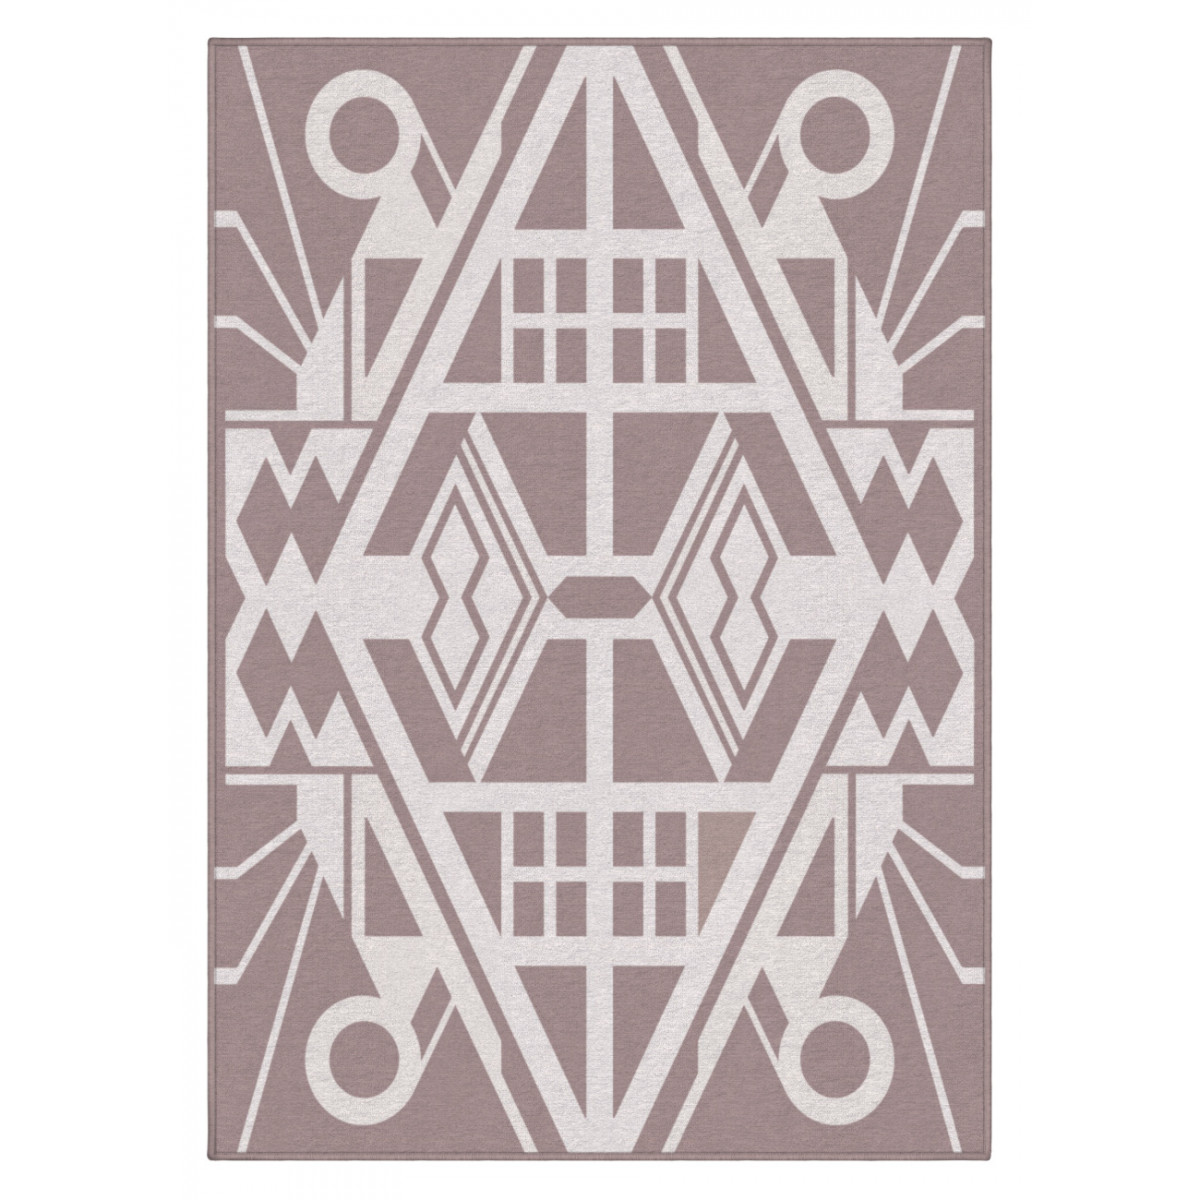 Dizajnový kusový koberec Mexico od Jindřicha Lípy